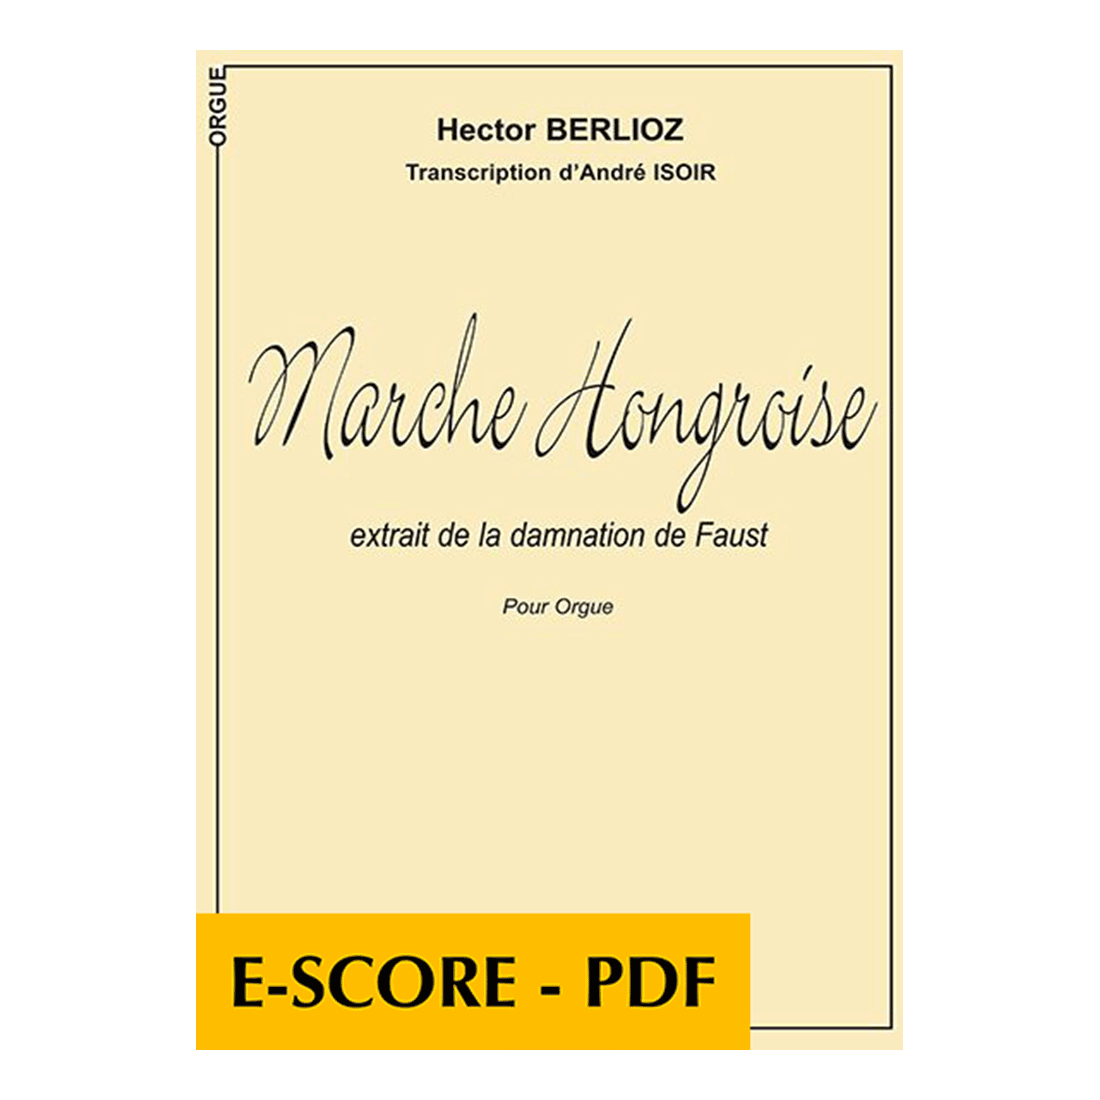 Marche hongroise pour orgue - E-score PDF